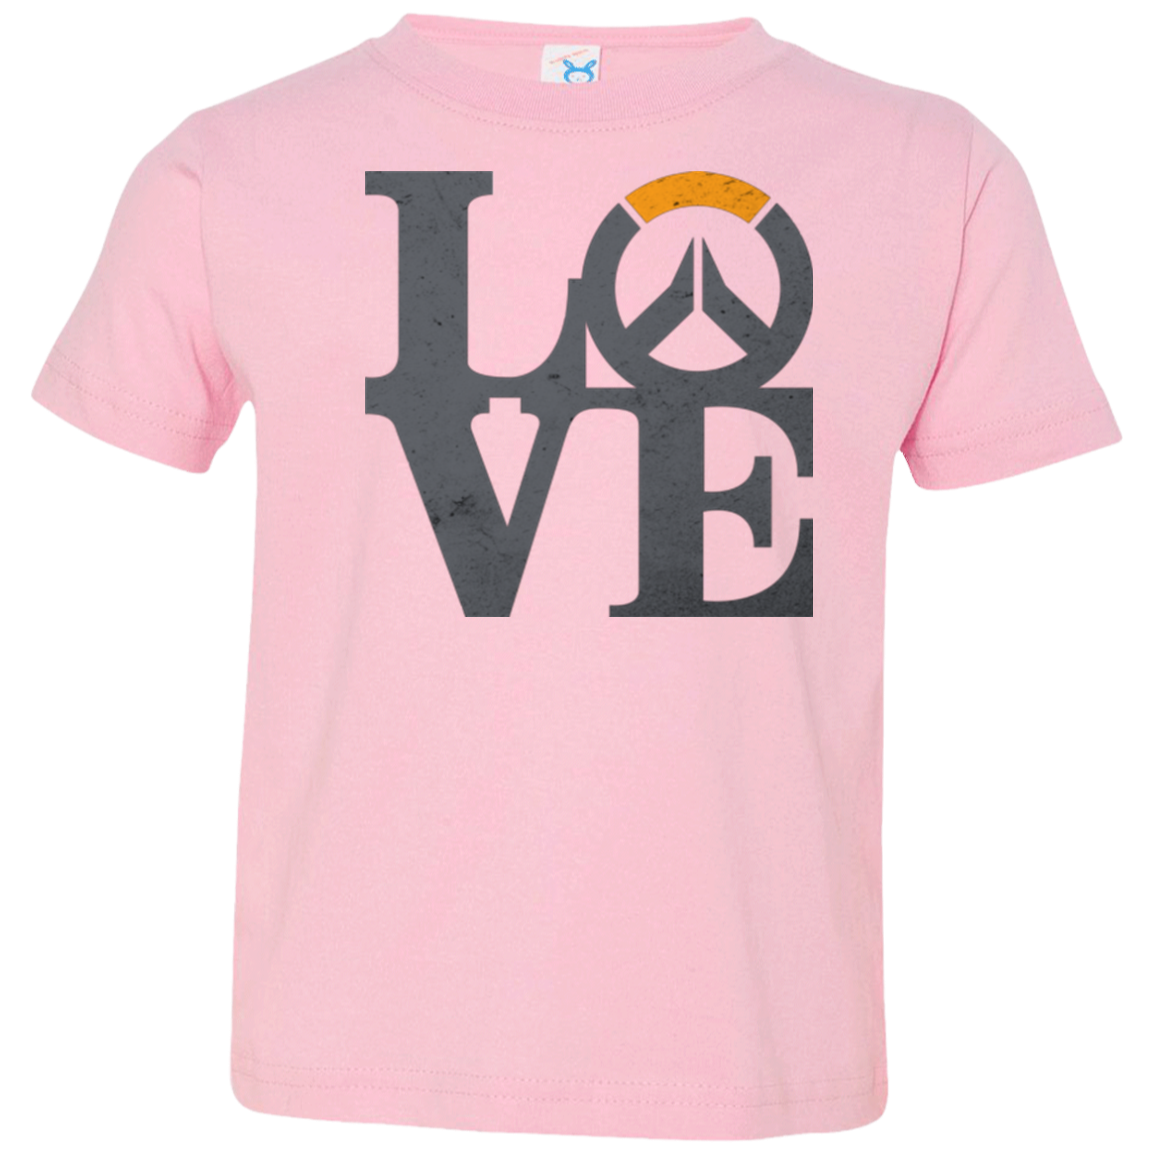 Loverwatch Toddler Premium T-Shirt